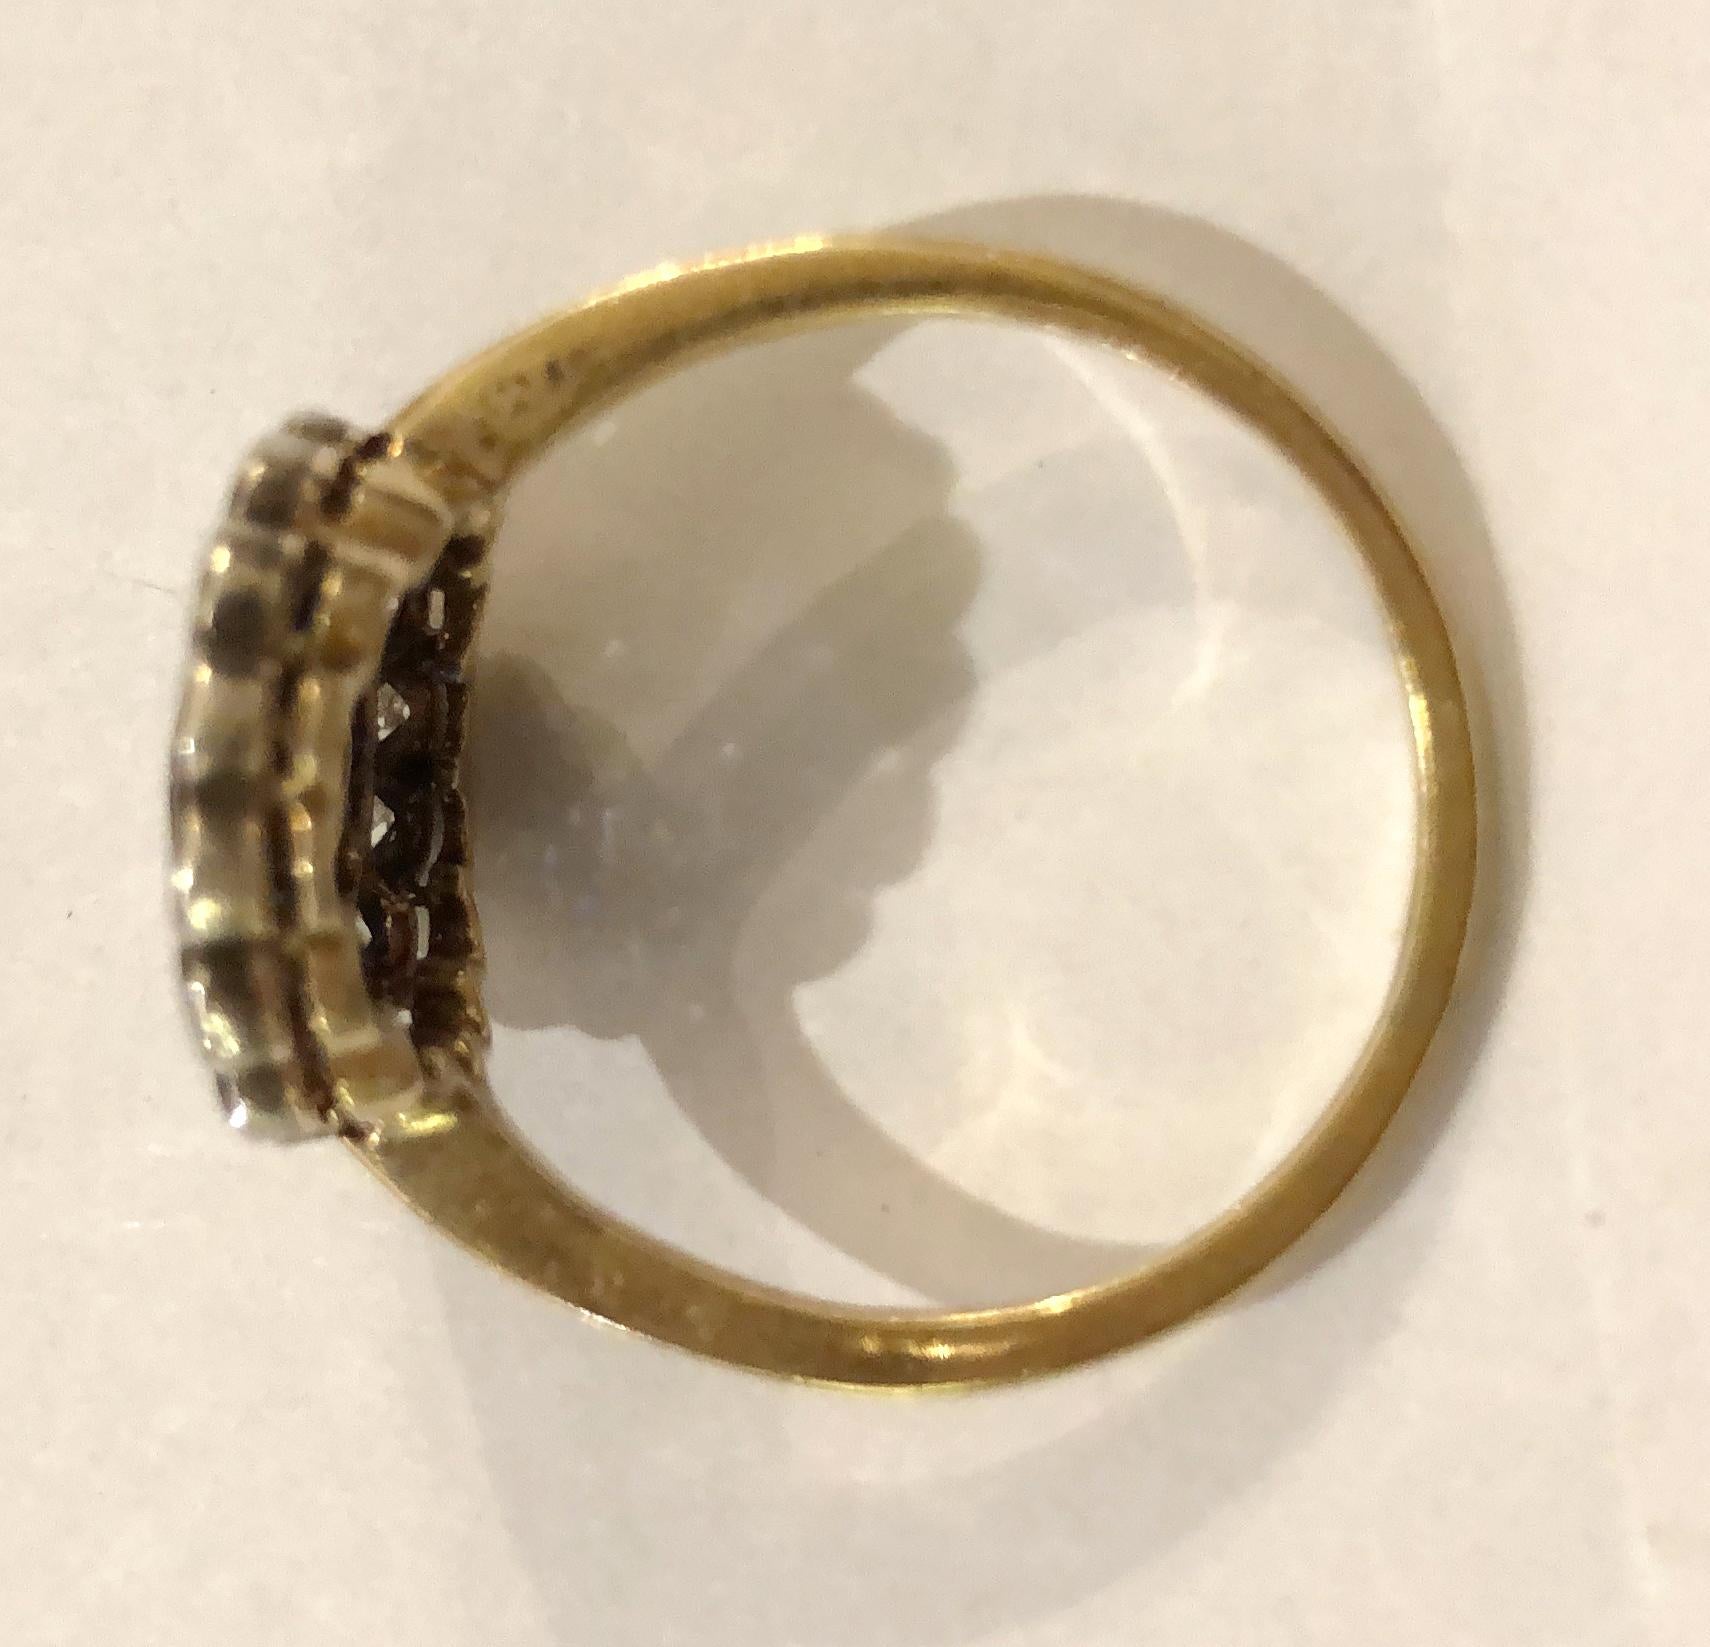 Gänseblümchenring aus 18-karätigem Gold, mit einem großen Diamanten von 0,25 Karat in der Mitte und umlaufenden Brillanten auf der Kontur von insgesamt 0,4 Karat mit Saphiren im Carre-Schliff, Italien 1920-1930er Jahre
Ringgröße US 10-10.5